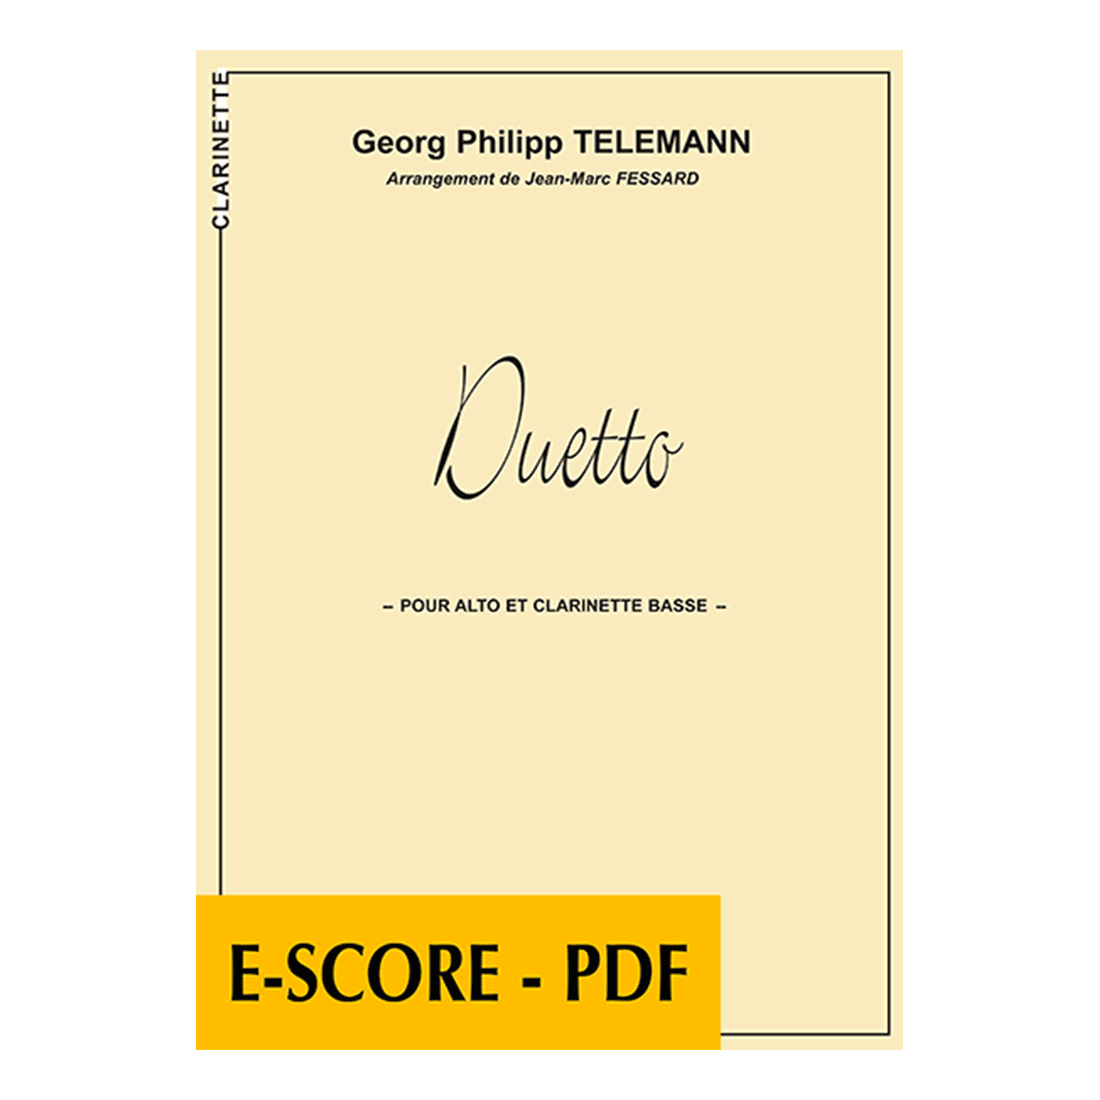 Duetto for viola and bass clarinet - E-score PDF